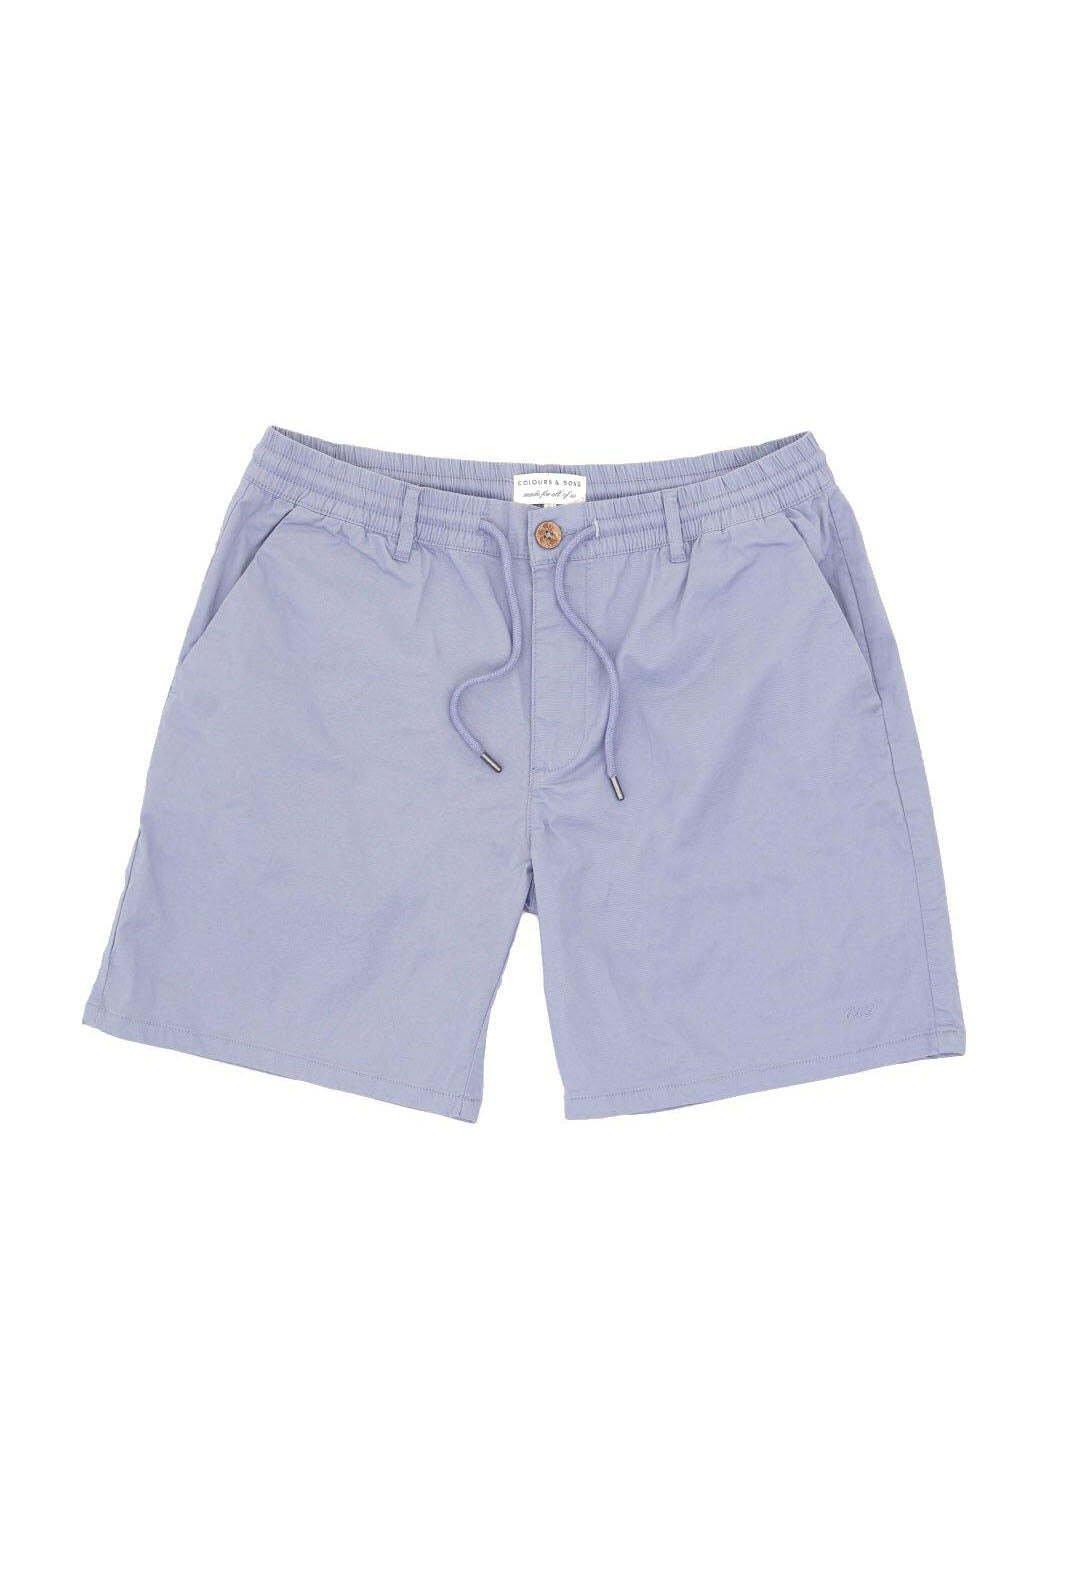 Shorts Shorts Light Twill Herren Blau XXL von Colours & Sons